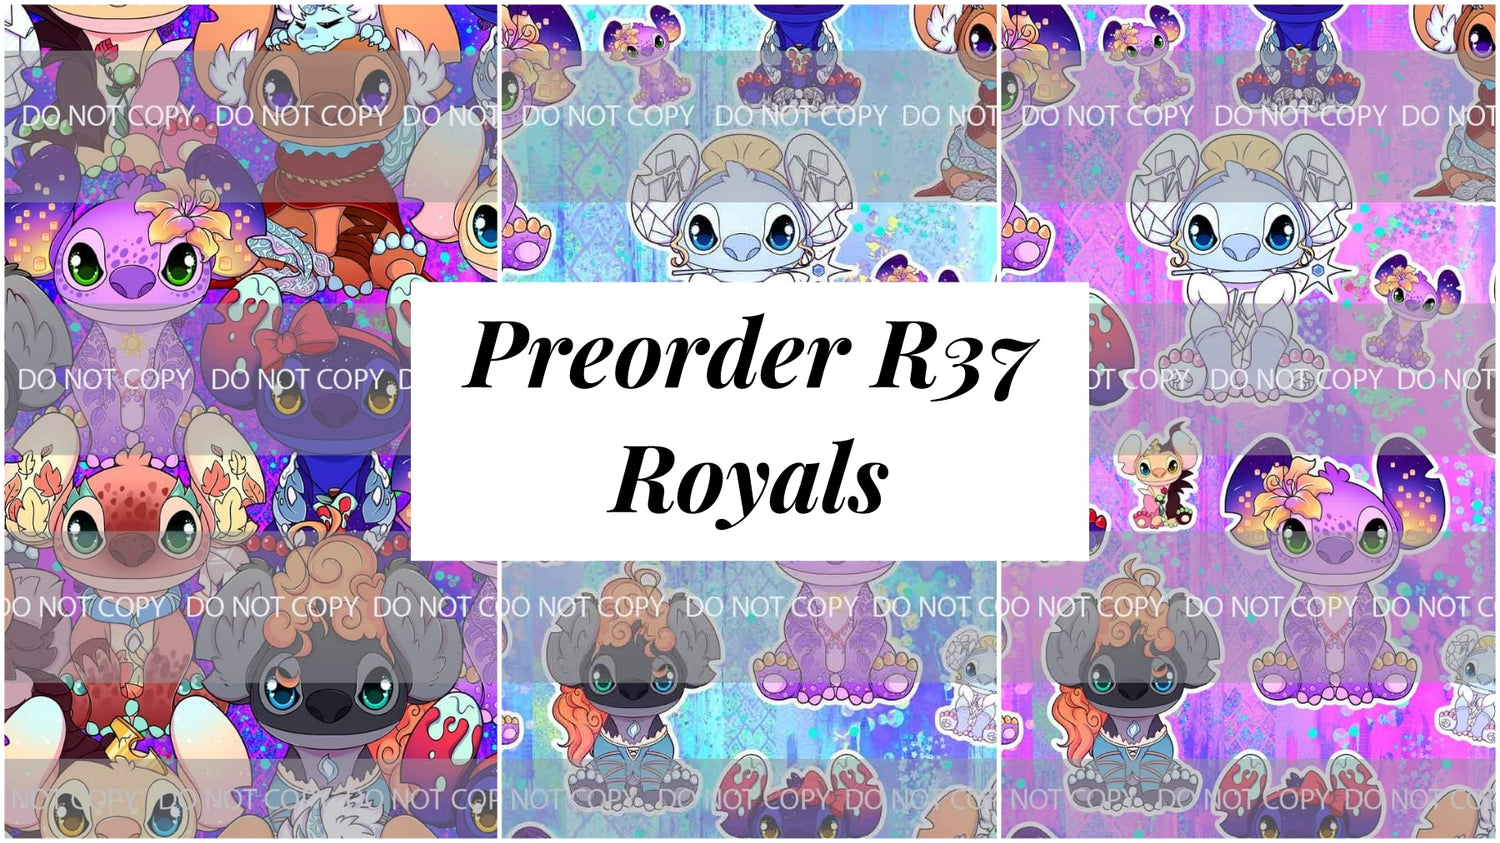 Preorder R37 Royals